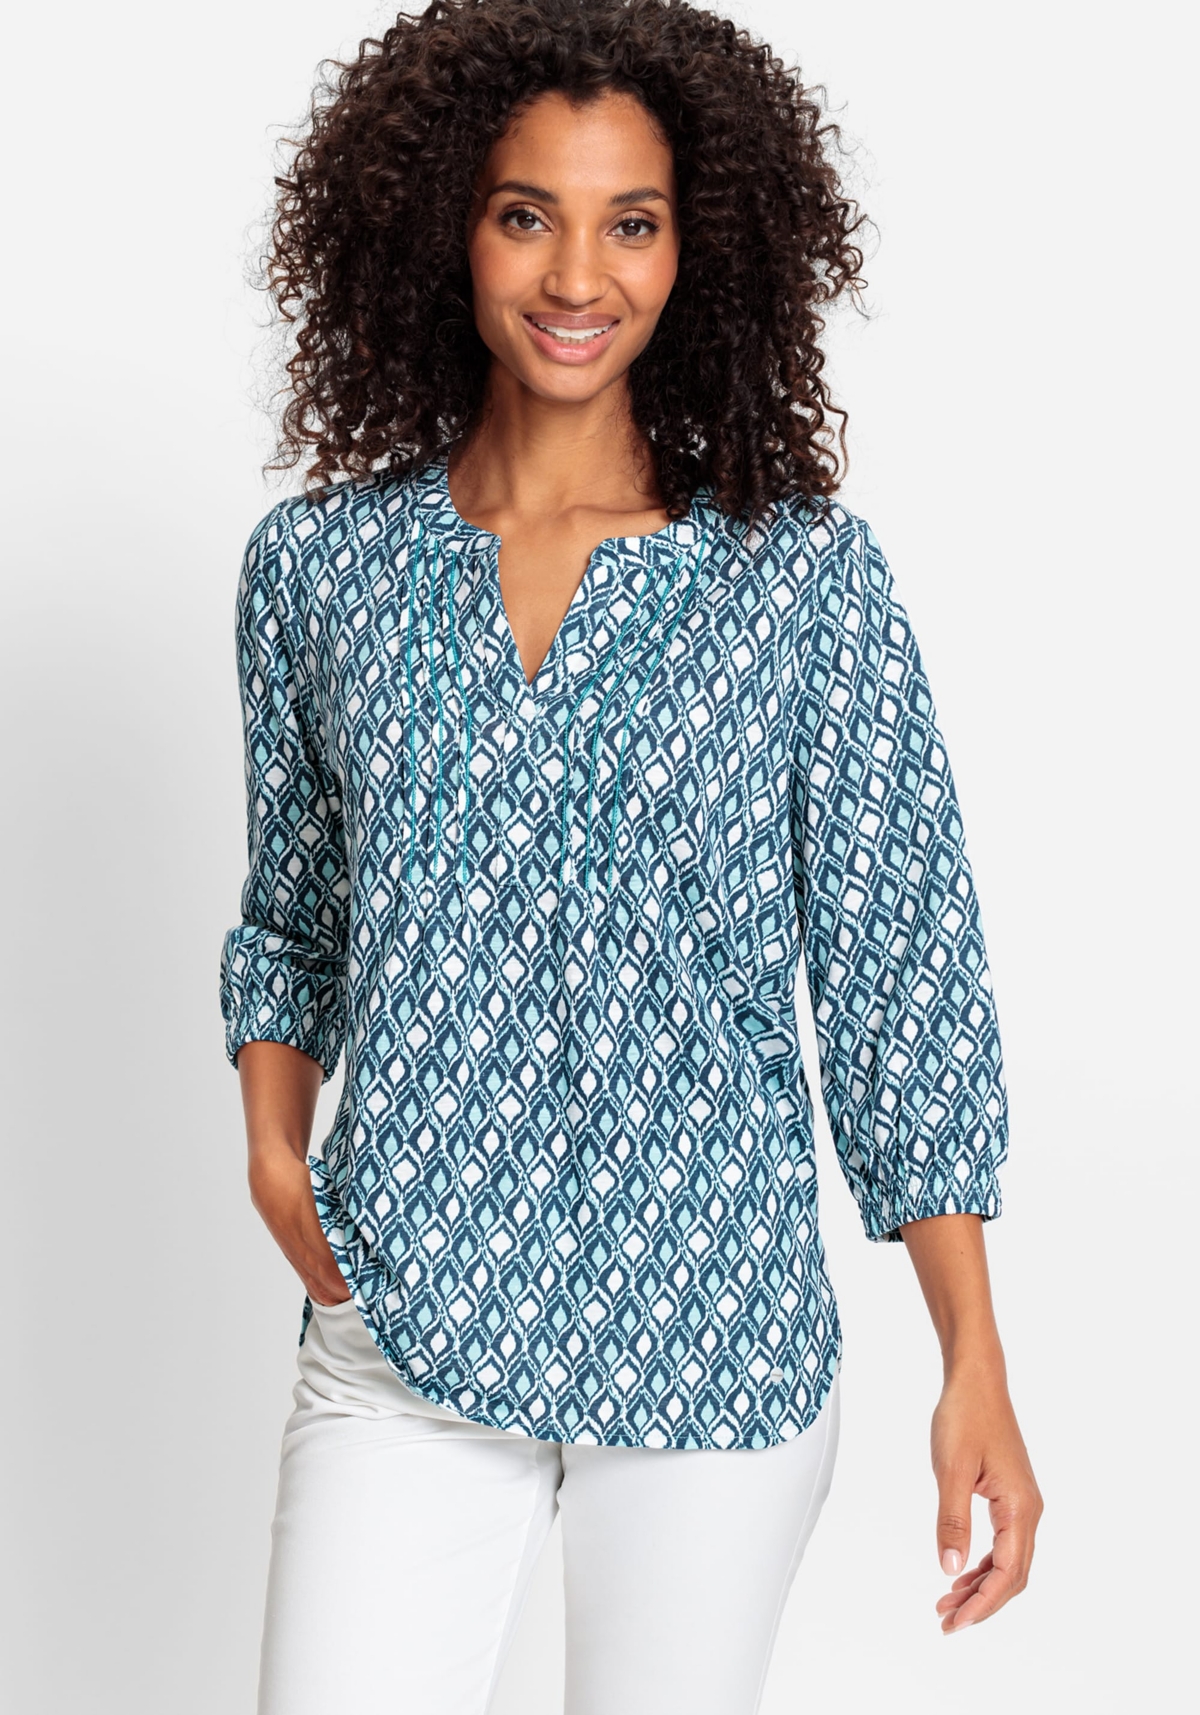 Women's 100% Organic Cotton 3/4 Sleeve Ikat Print Tunic Tee - Light turquoise